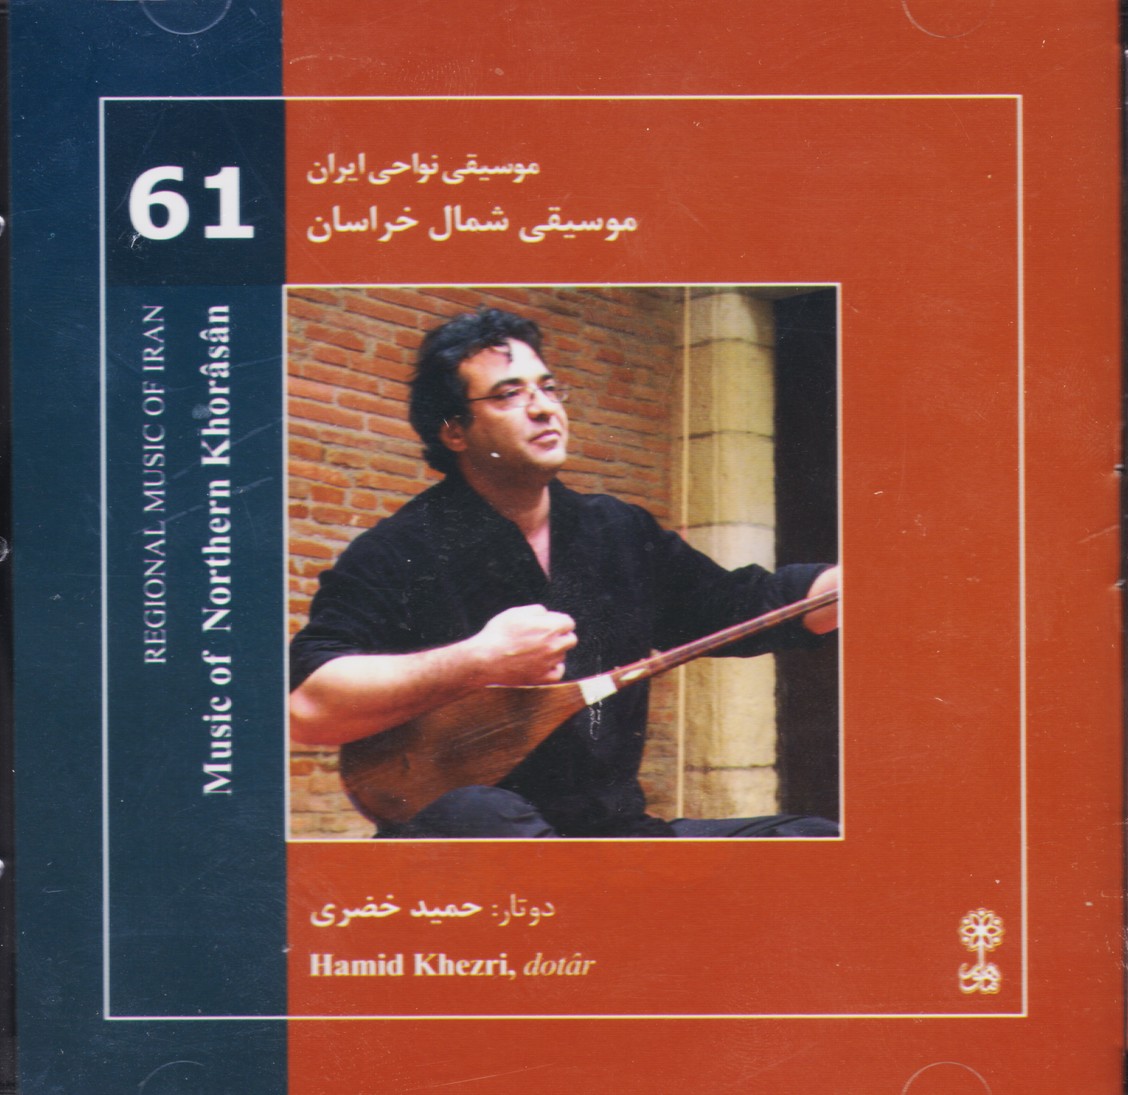 موسیقی شمال خراسان/موسیقی نواحی ایران 61